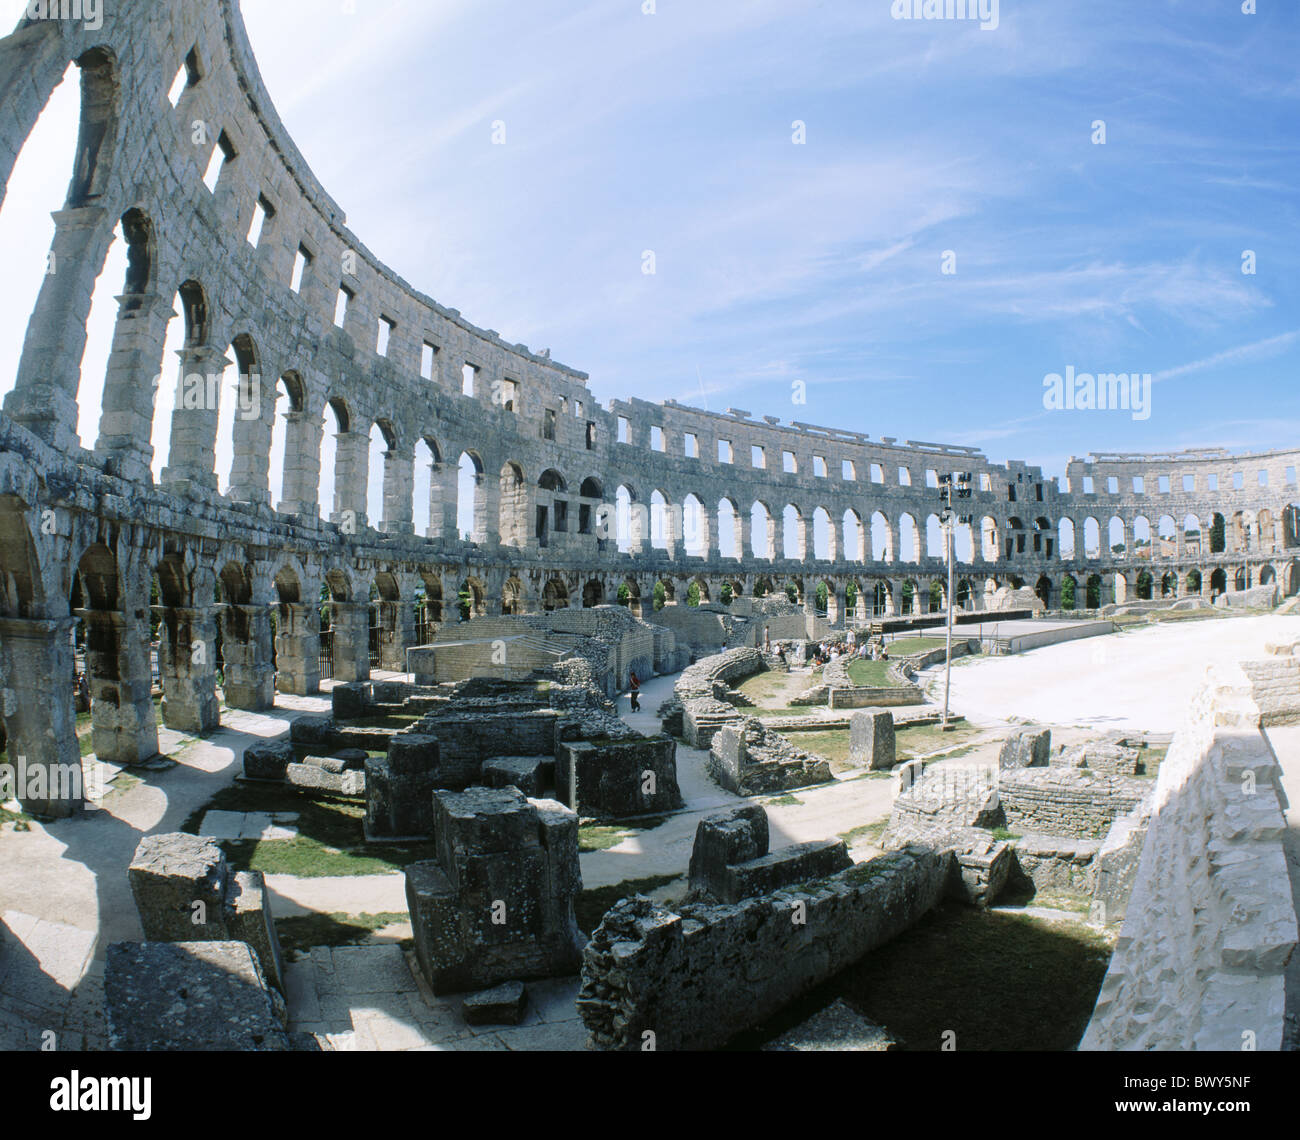 La culture de l'amphithéâtre romain de Pula Istrie Croatie monde antique antiquité romaine antique Banque D'Images